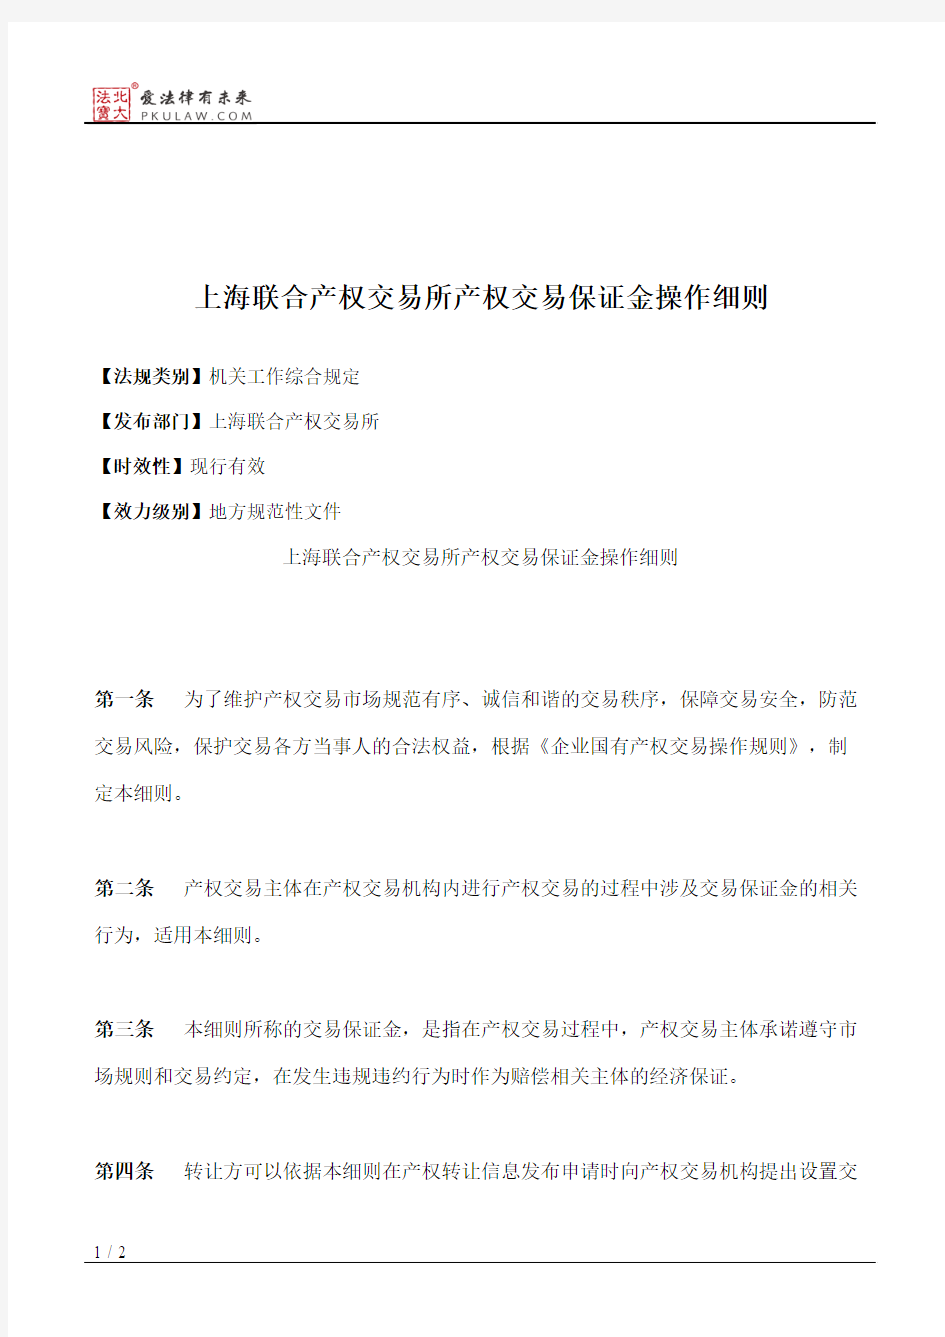 上海联合产权交易所产权交易保证金操作细则